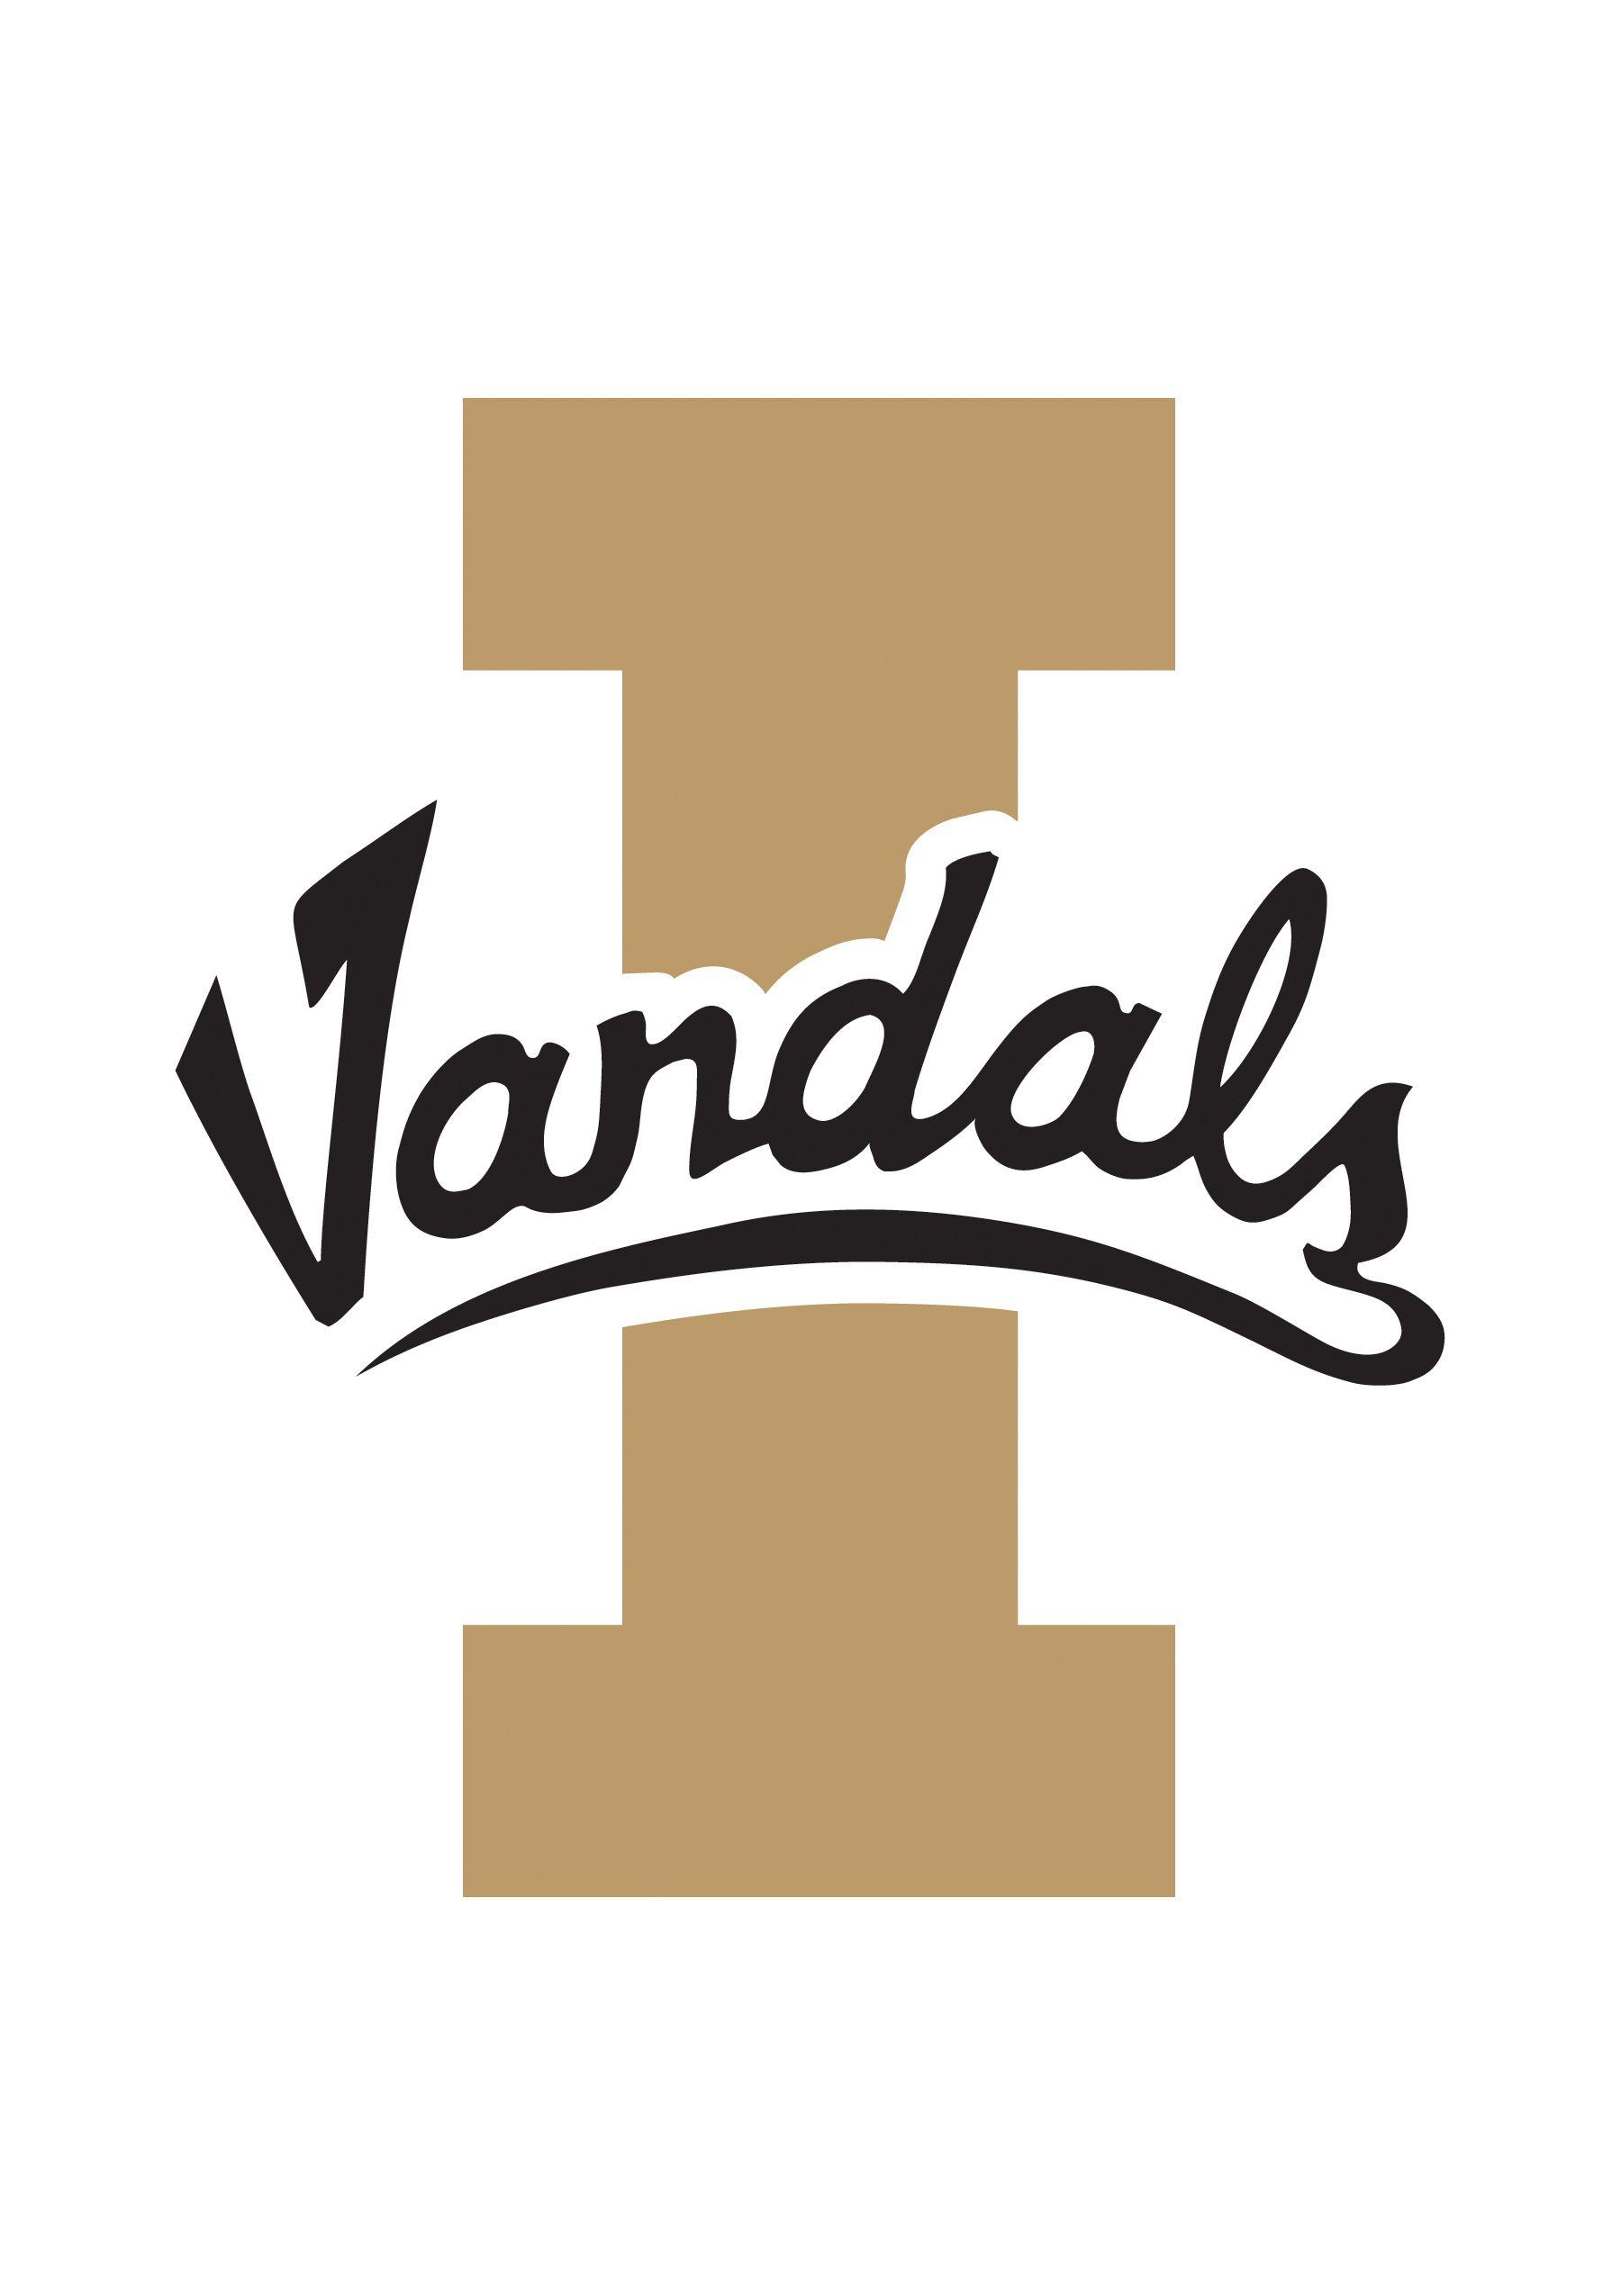 Idaho Logo - University of idaho Logos